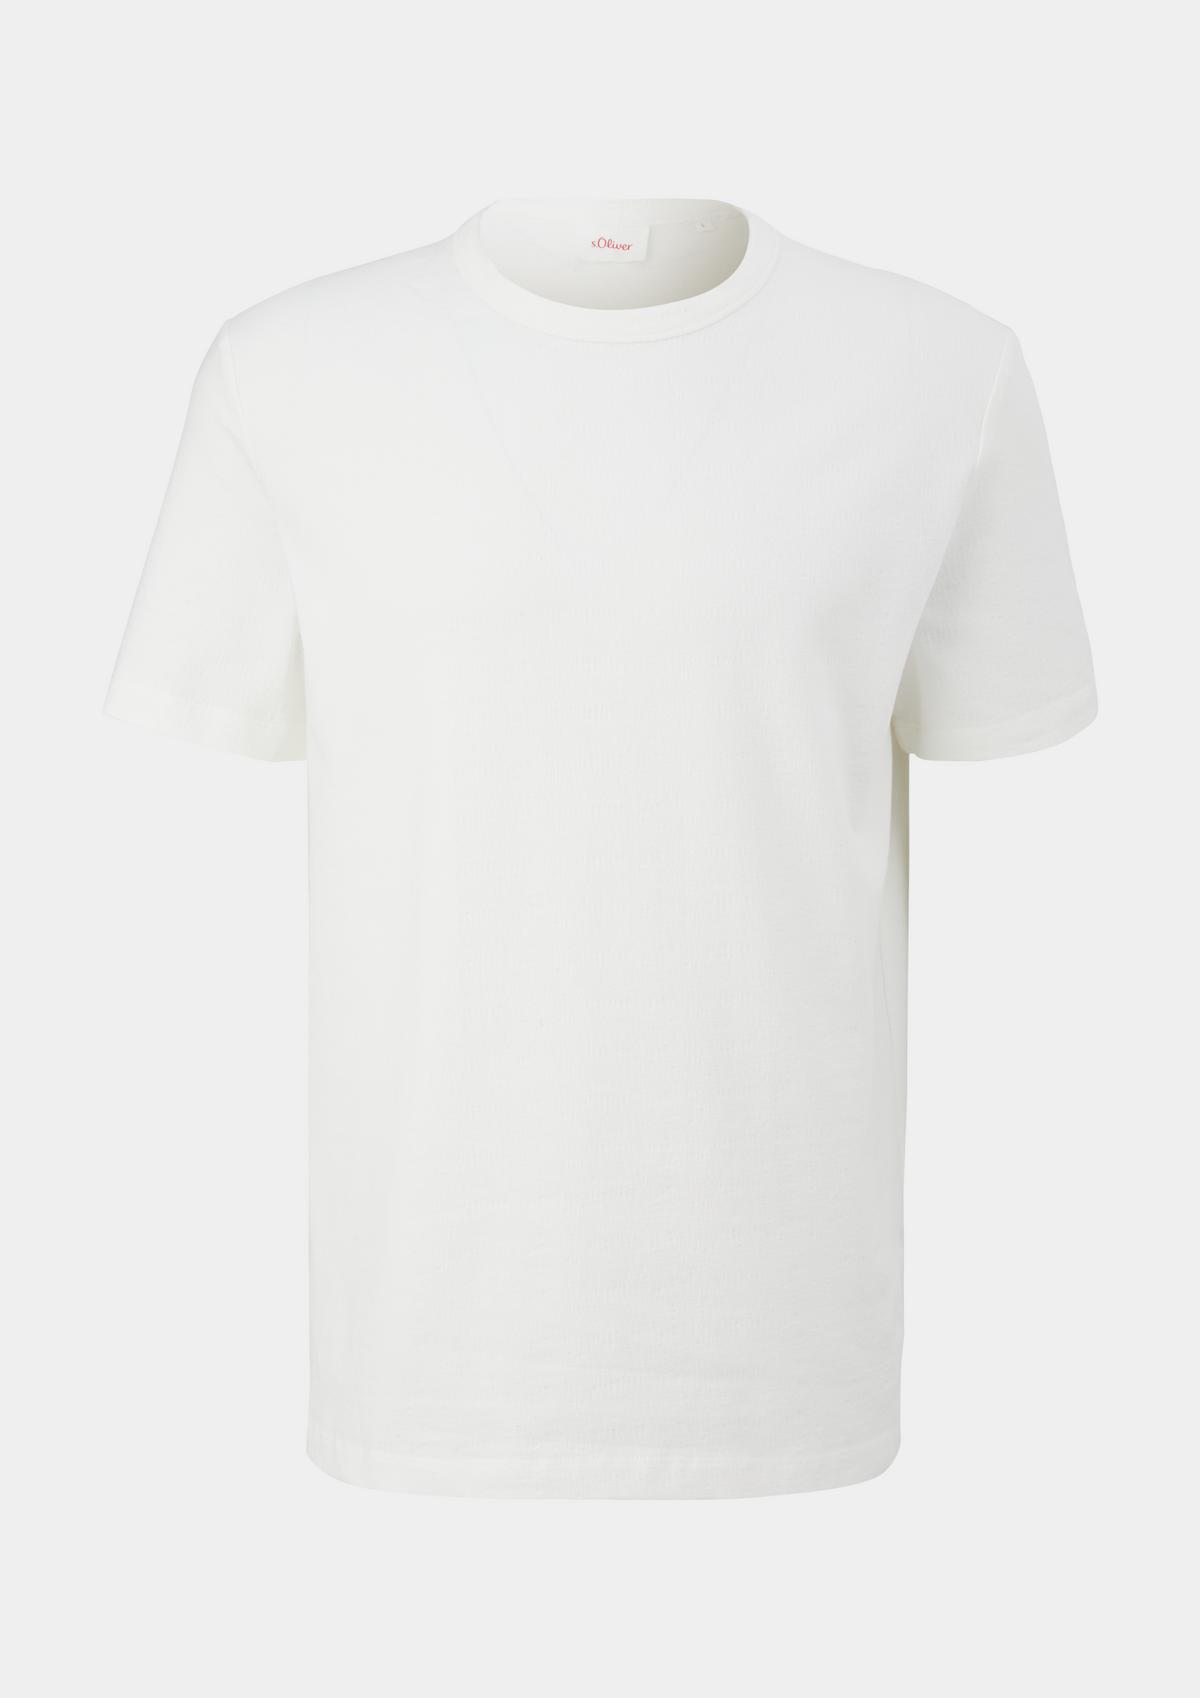 T-shirt Seersucker white -